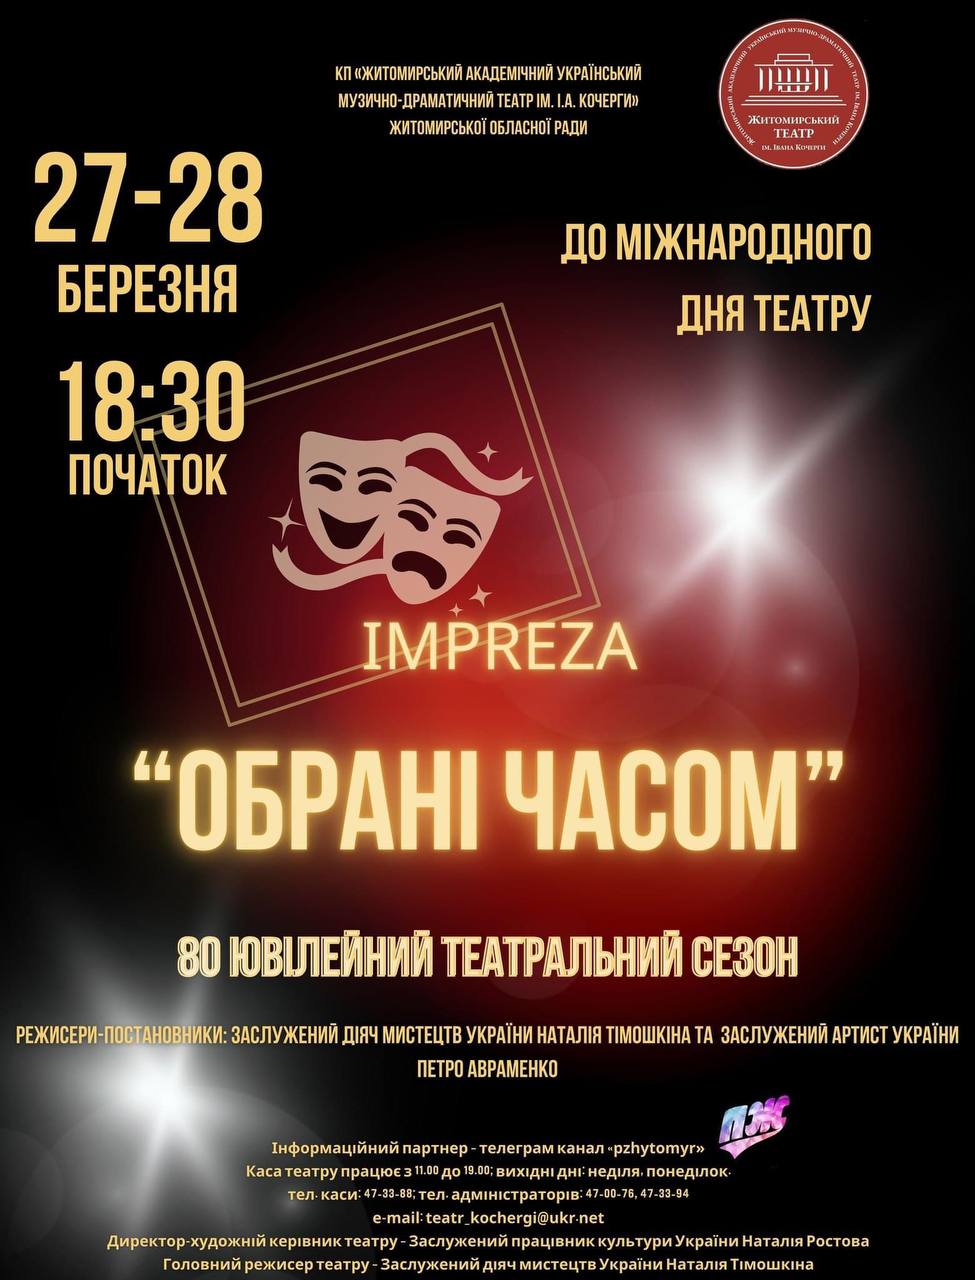 Житомирський театр імені Івана Кочерги запрошує долучитися до святкування 80-го ювілейного театрального сезону у Міжнародний день театру